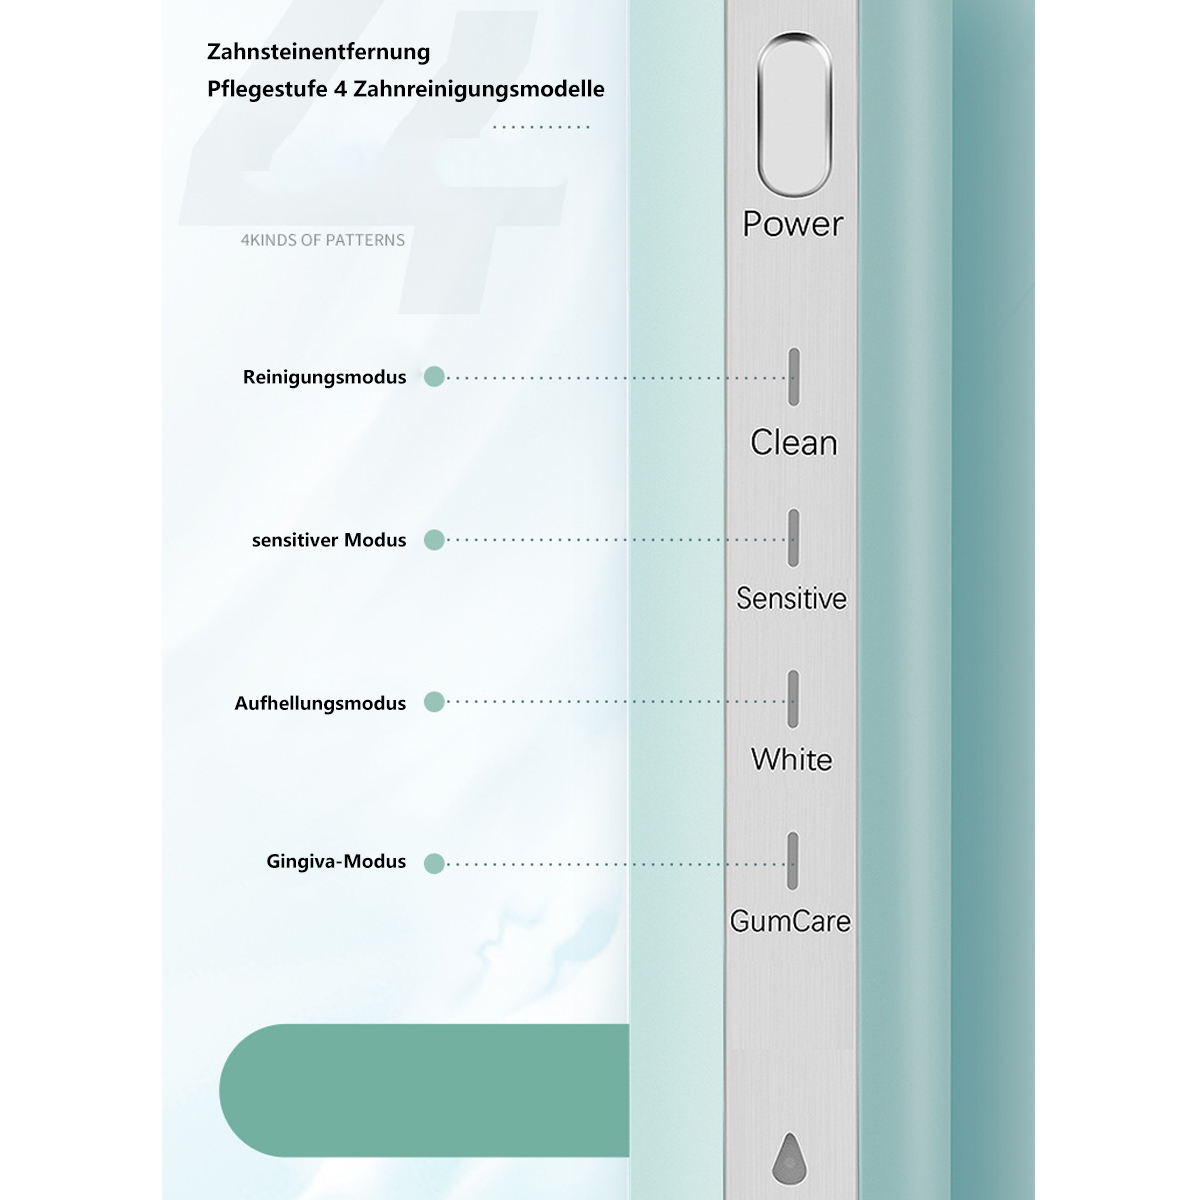 Black & Smart Body Sonic Full Toothbrush USB White schwarz Electric SYNTEK Charge Zahnbürste Elektrische elektrische Zahnbürste Wash Fast